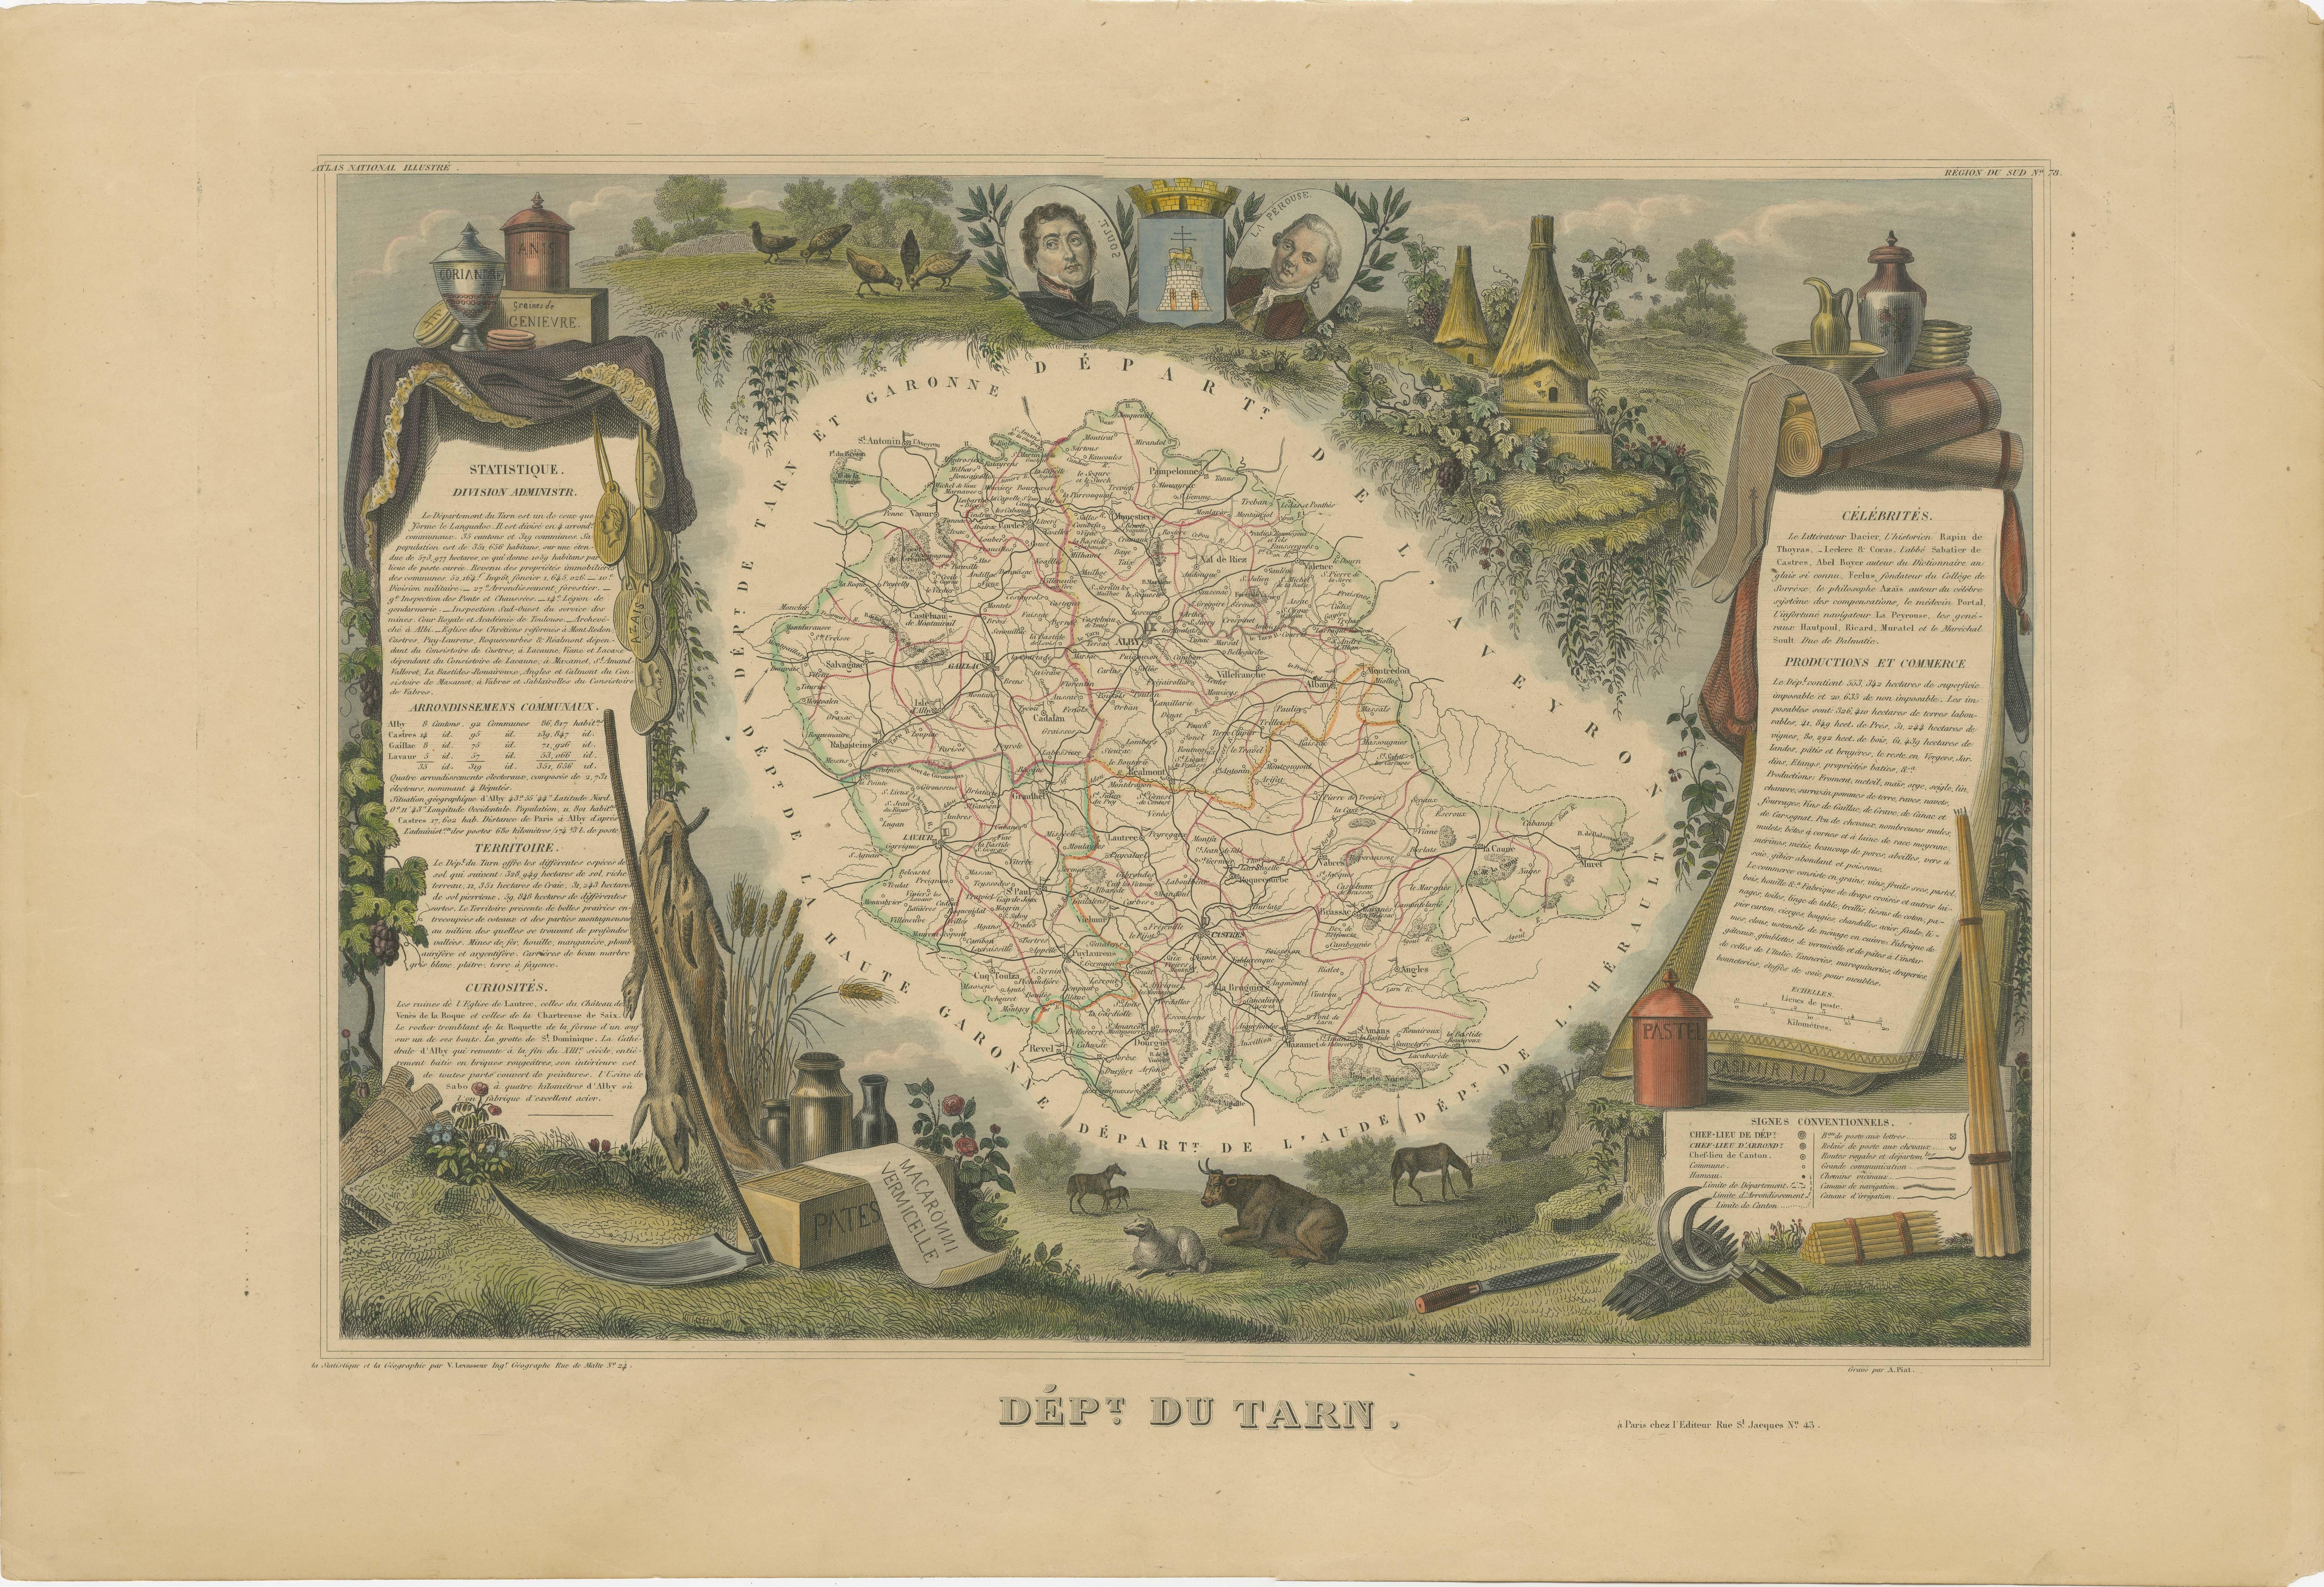 Antike Karte mit dem Titel 'Dépt. du Tarn'. Karte des französischen Departements Tarn, Frankreich. In diesem Gebiet wird eine Vielzahl von traditionellen Weinen hergestellt, darunter Cahors, Mauzac, Loin de l'Oeil und Ondenc für die Weißweine und